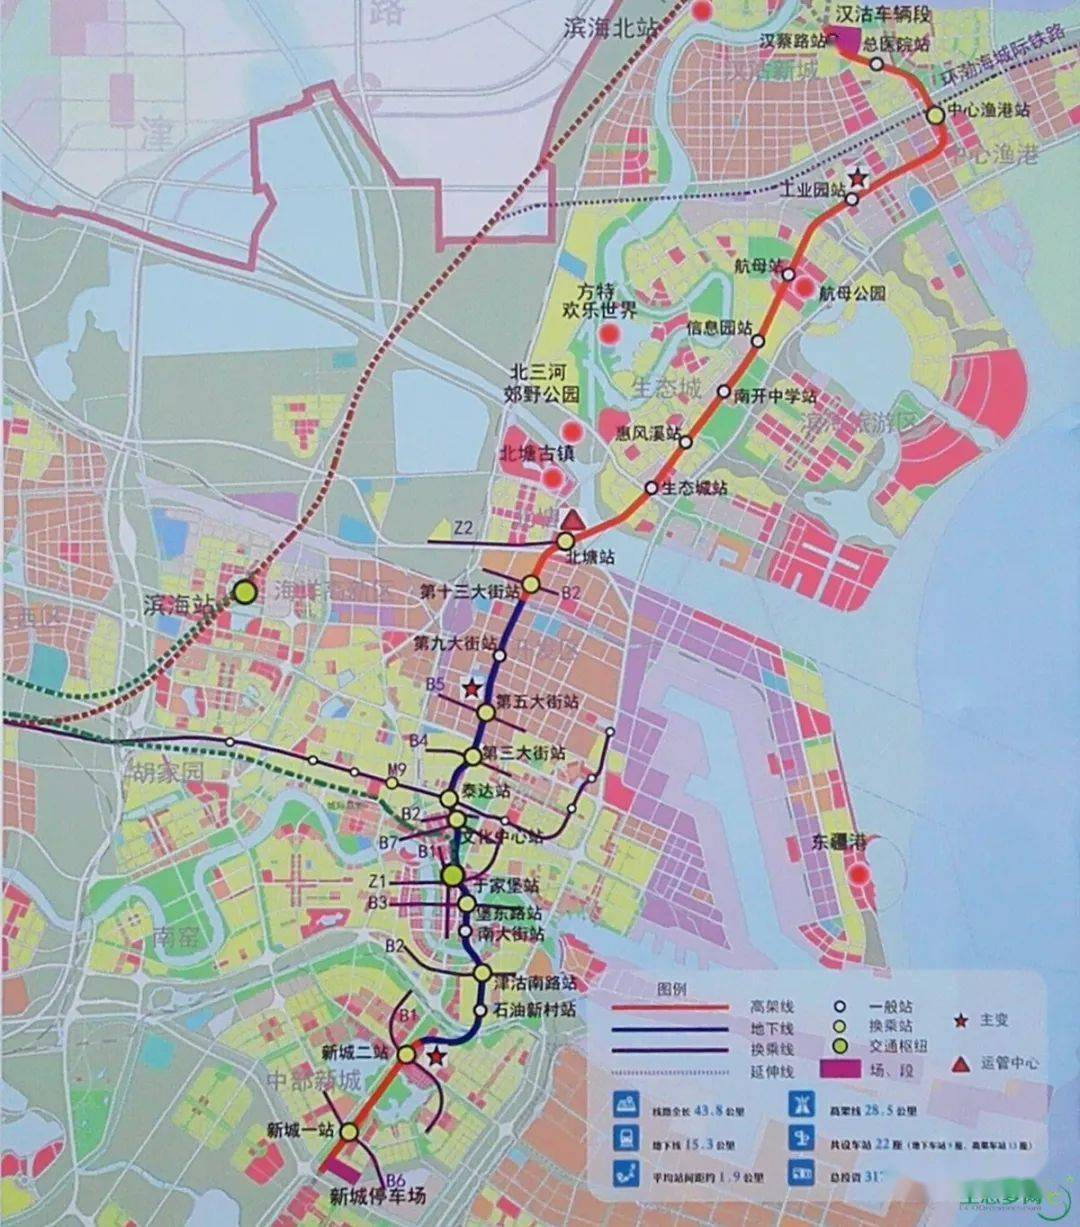 最新!地铁z4线在汉沽设两站,将来与滨海北站接驳